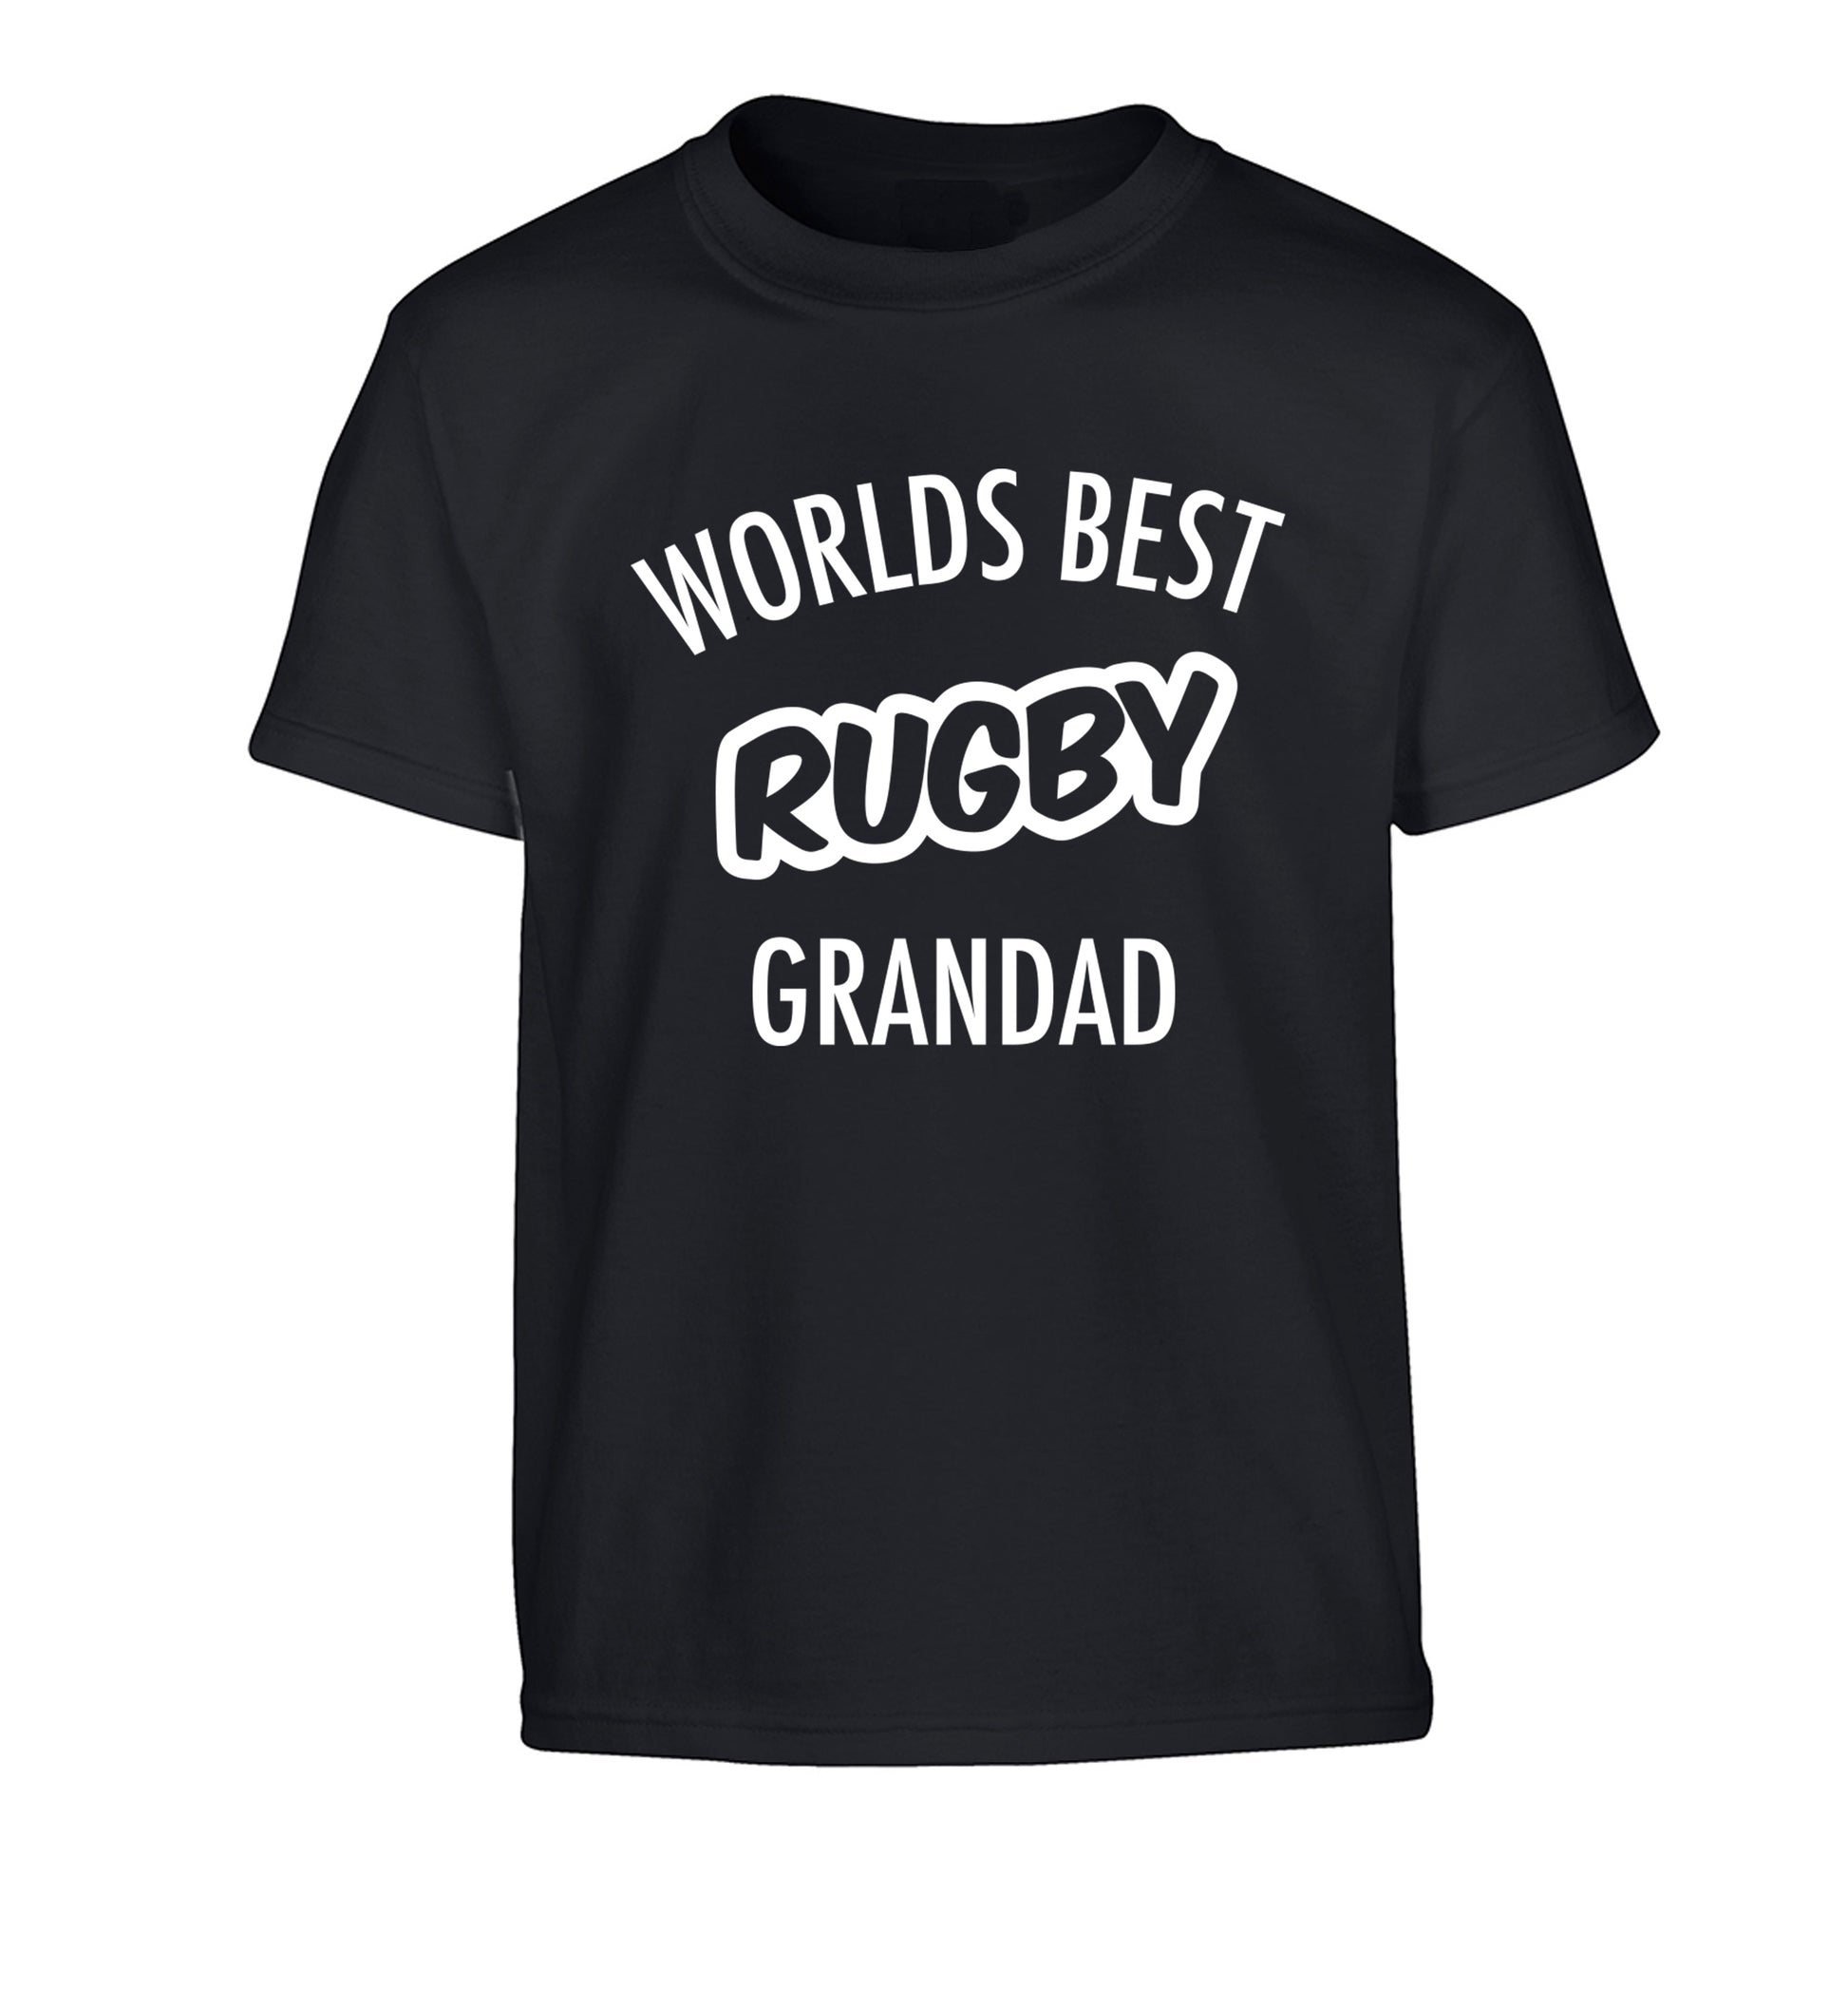 Worlds best rugby grandad Children's black Tshirt 12-13 Years